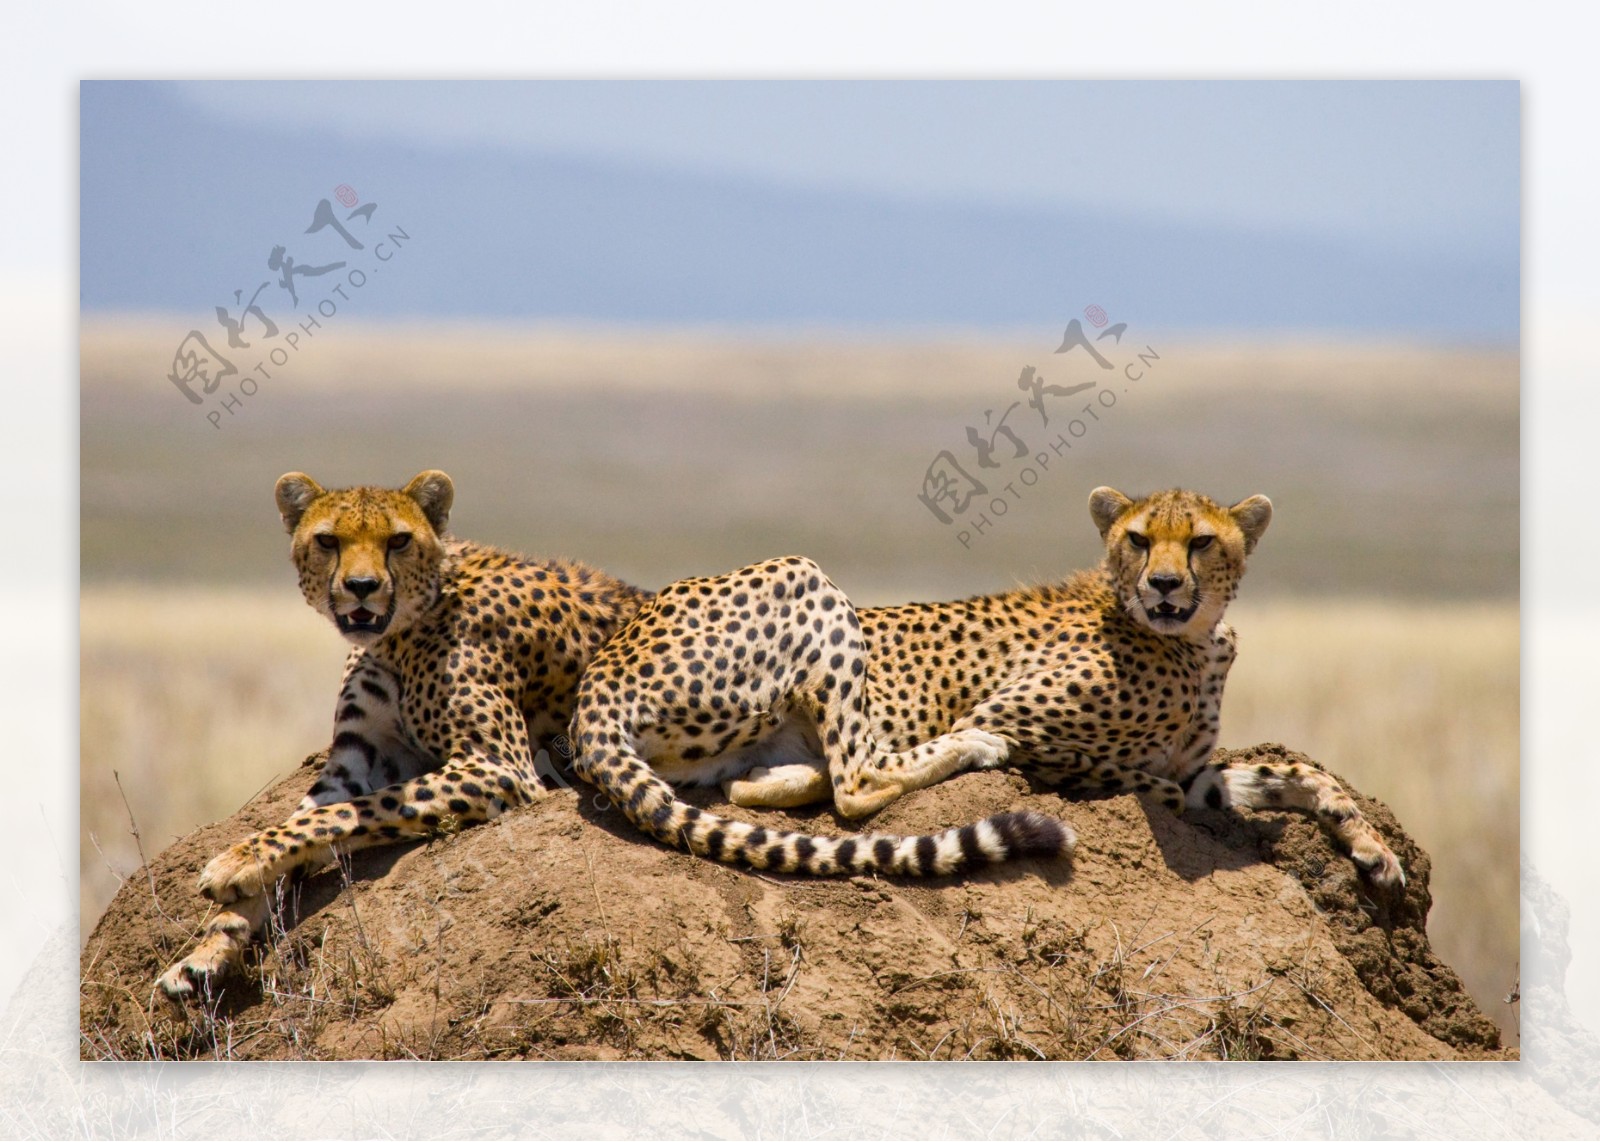 非洲猎豹图片